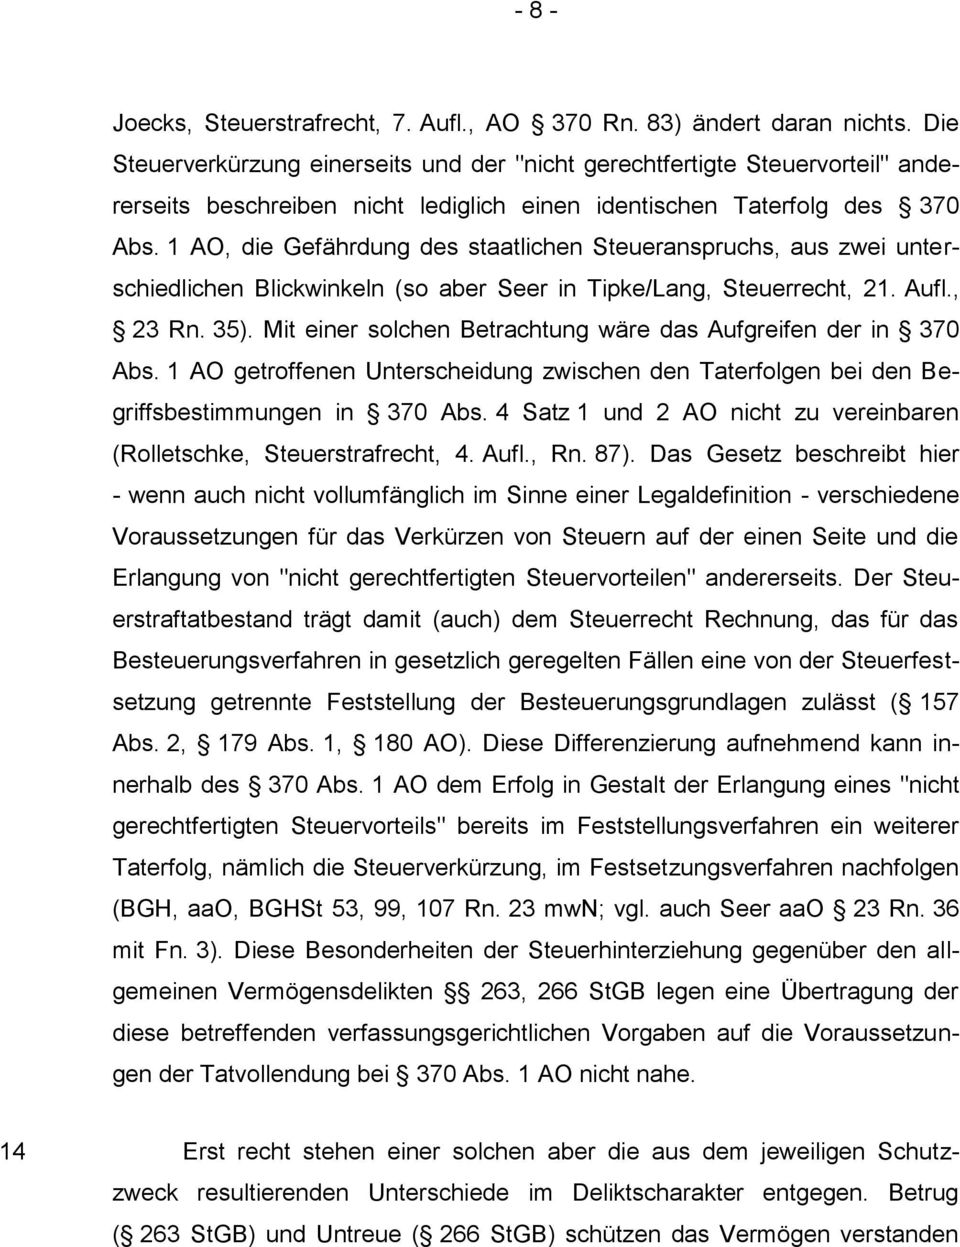 1 AO, die Gefährdung des staatlichen Steueranspruchs, aus zwei unterschiedlichen Blickwinkeln (so aber Seer in Tipke/Lang, Steuerrecht, 21. Aufl., 23 Rn. 35).